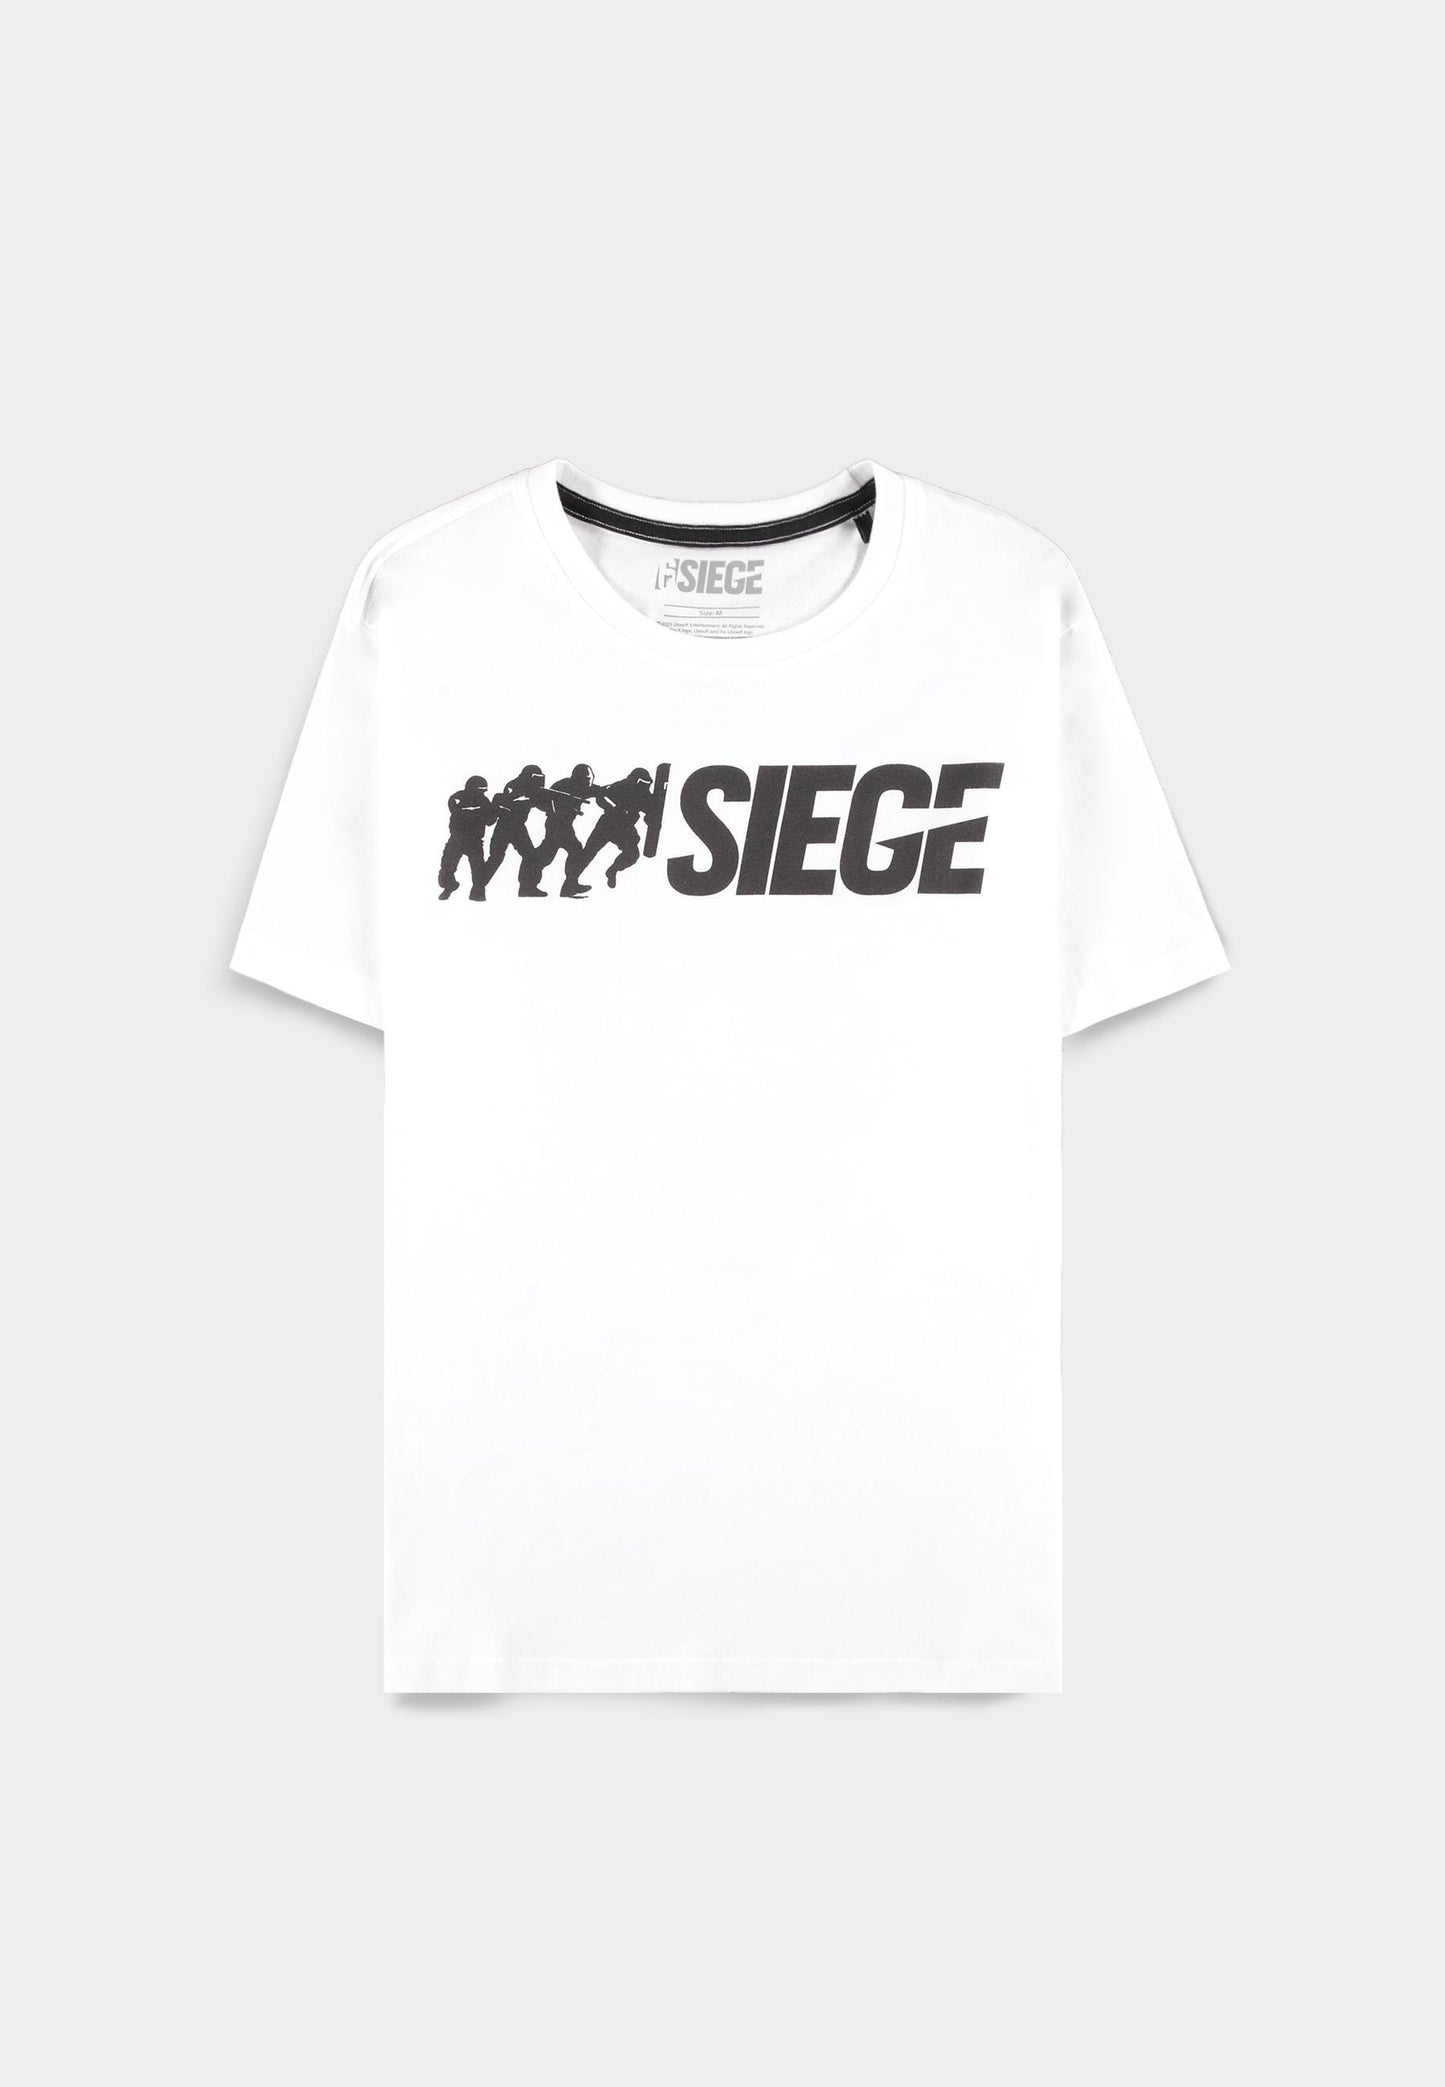 6-Siege - Men's Logo Short Sleeved T-shirt